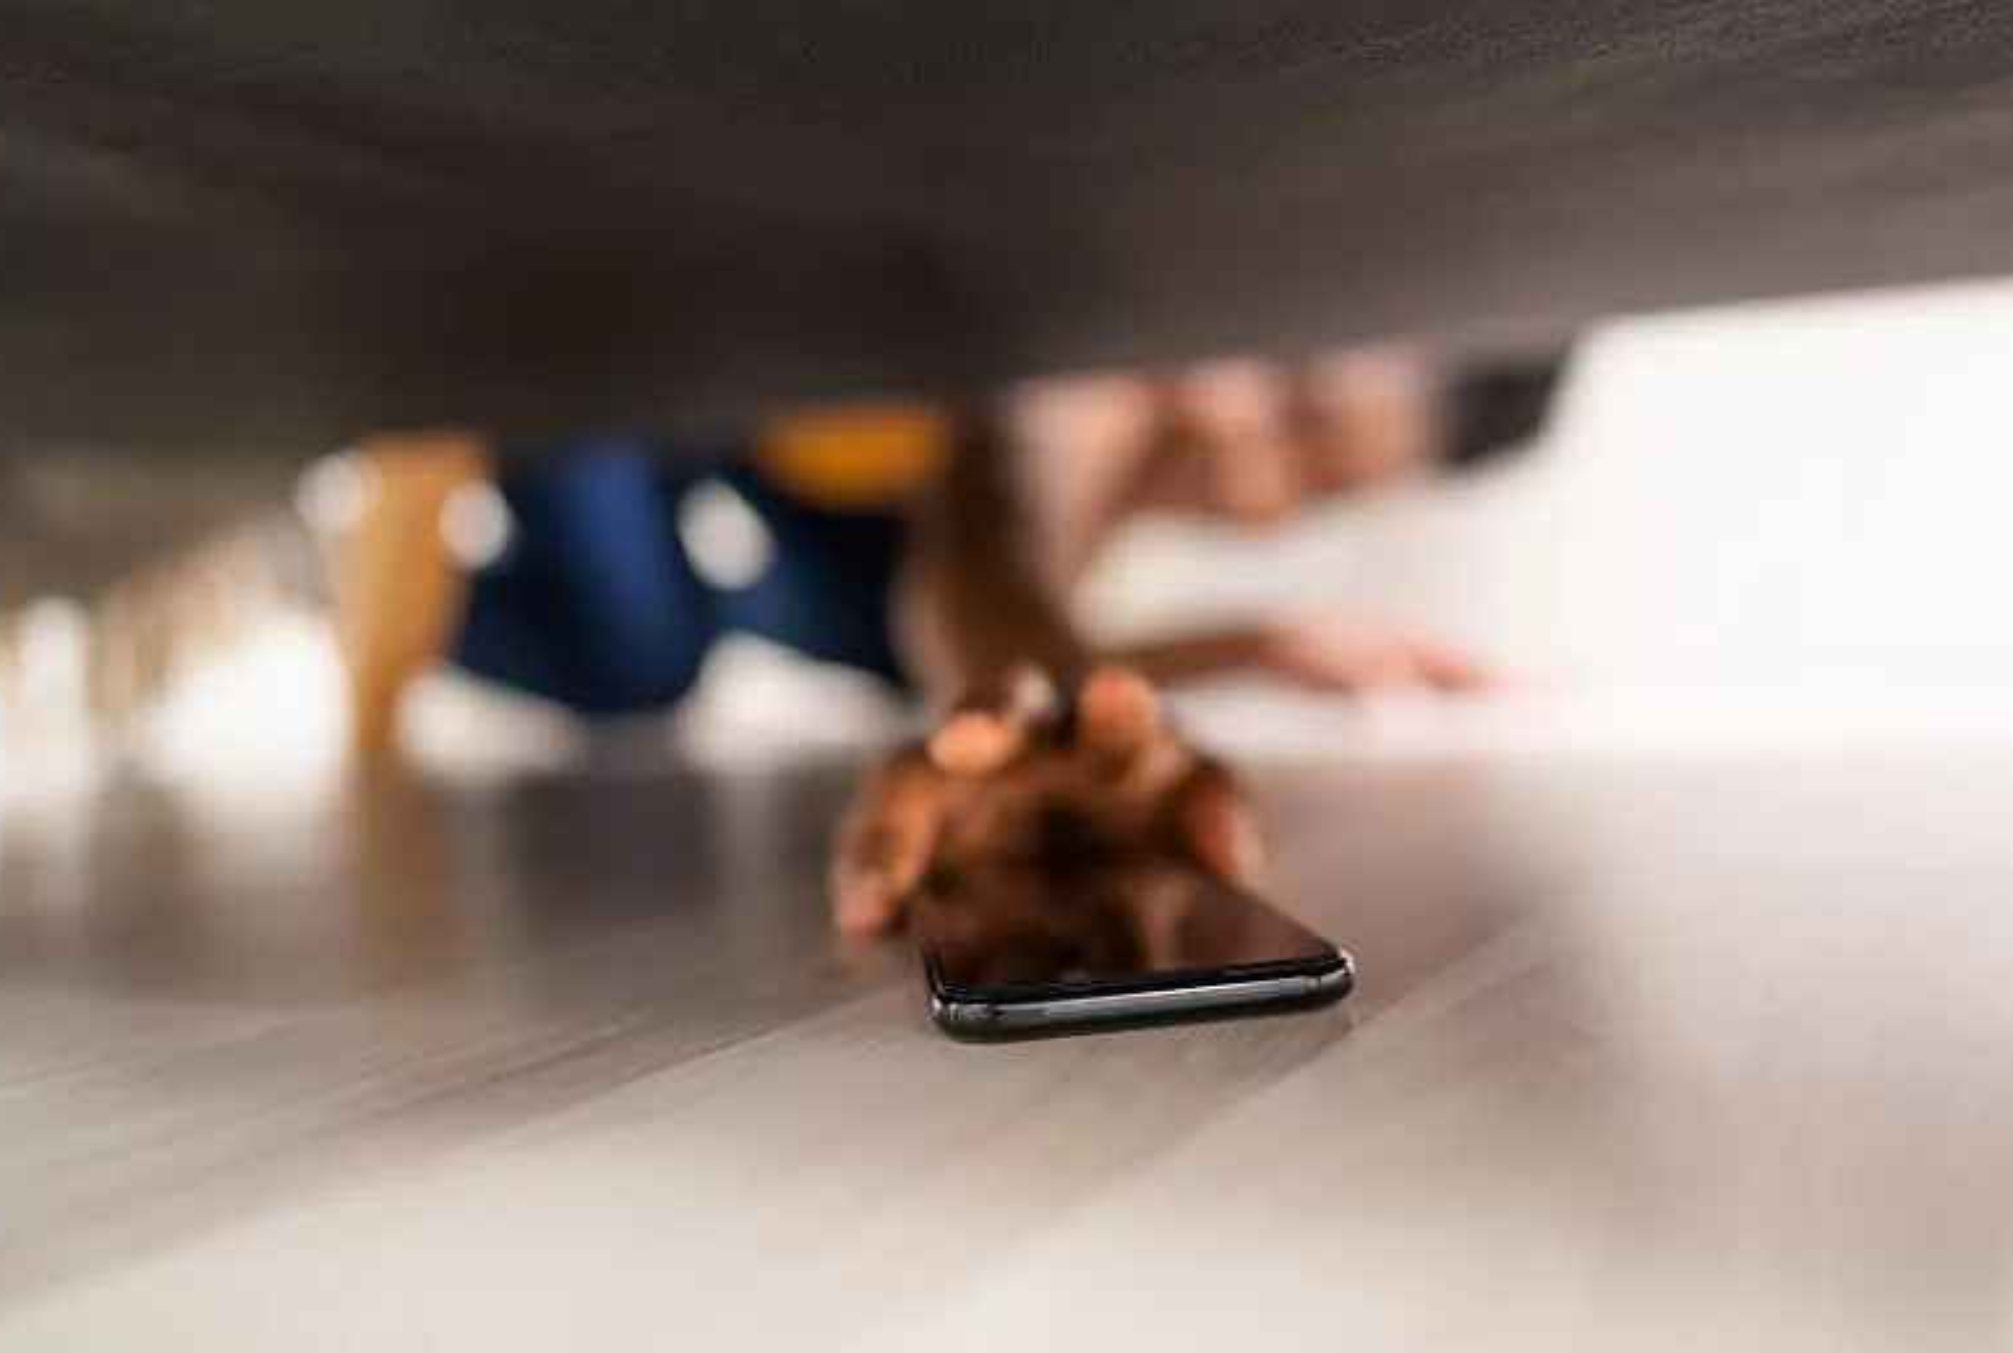 Έχασες το κινητό σου και είναι στο αθόρυβο: Το κόλπο για να το βρεις